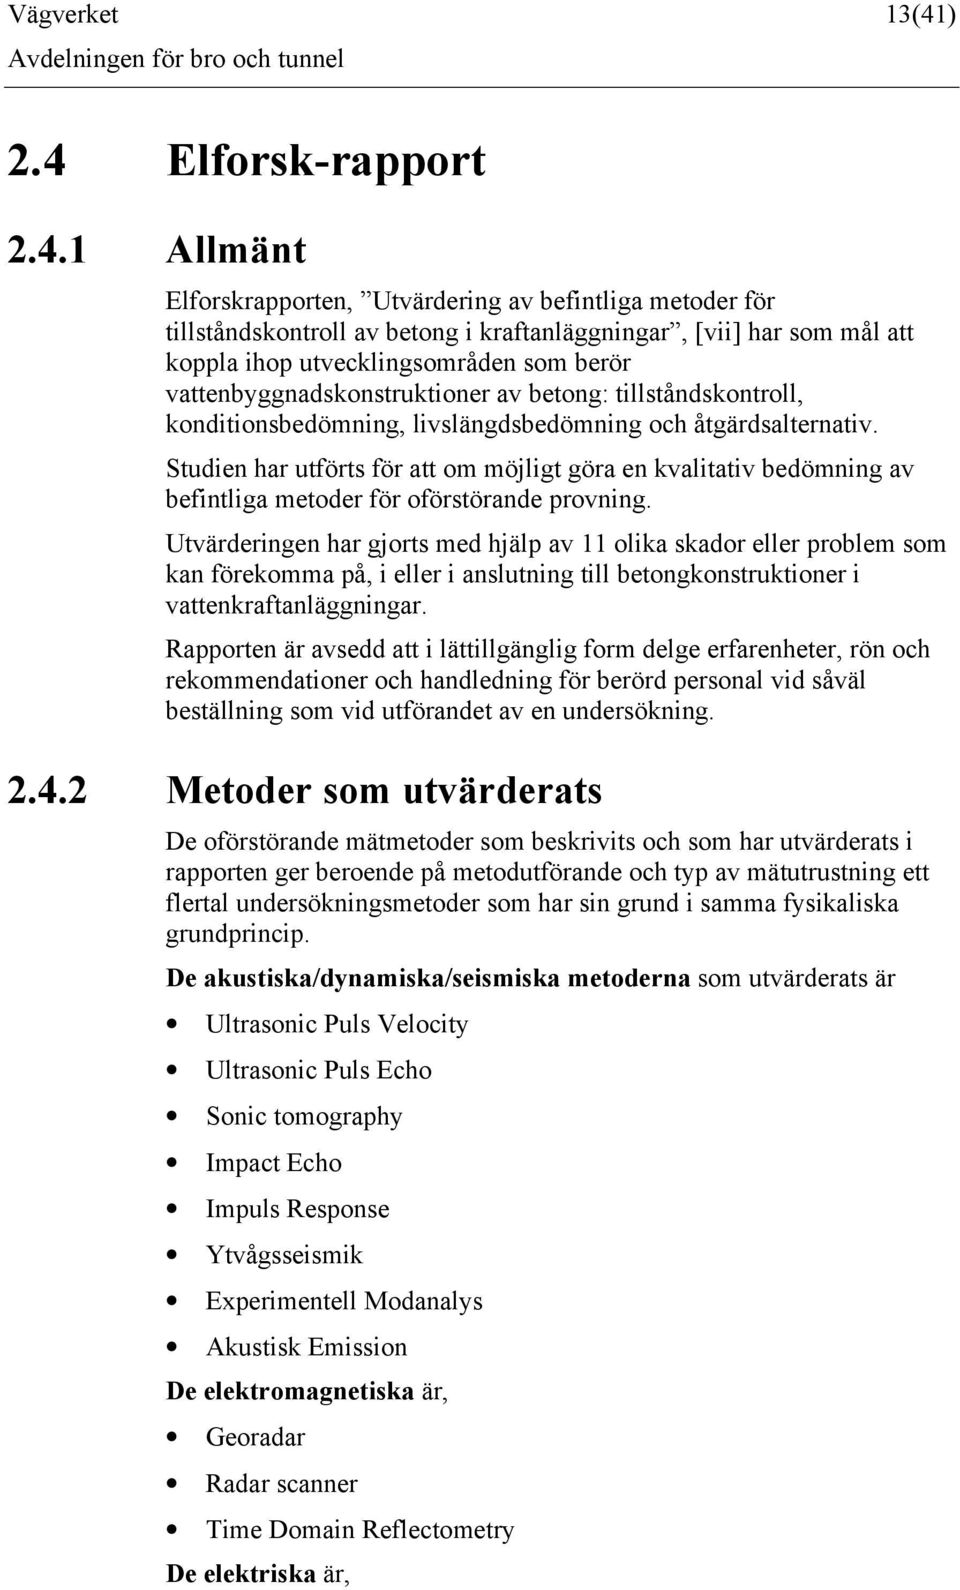 Elforsk-rapport 2.4.